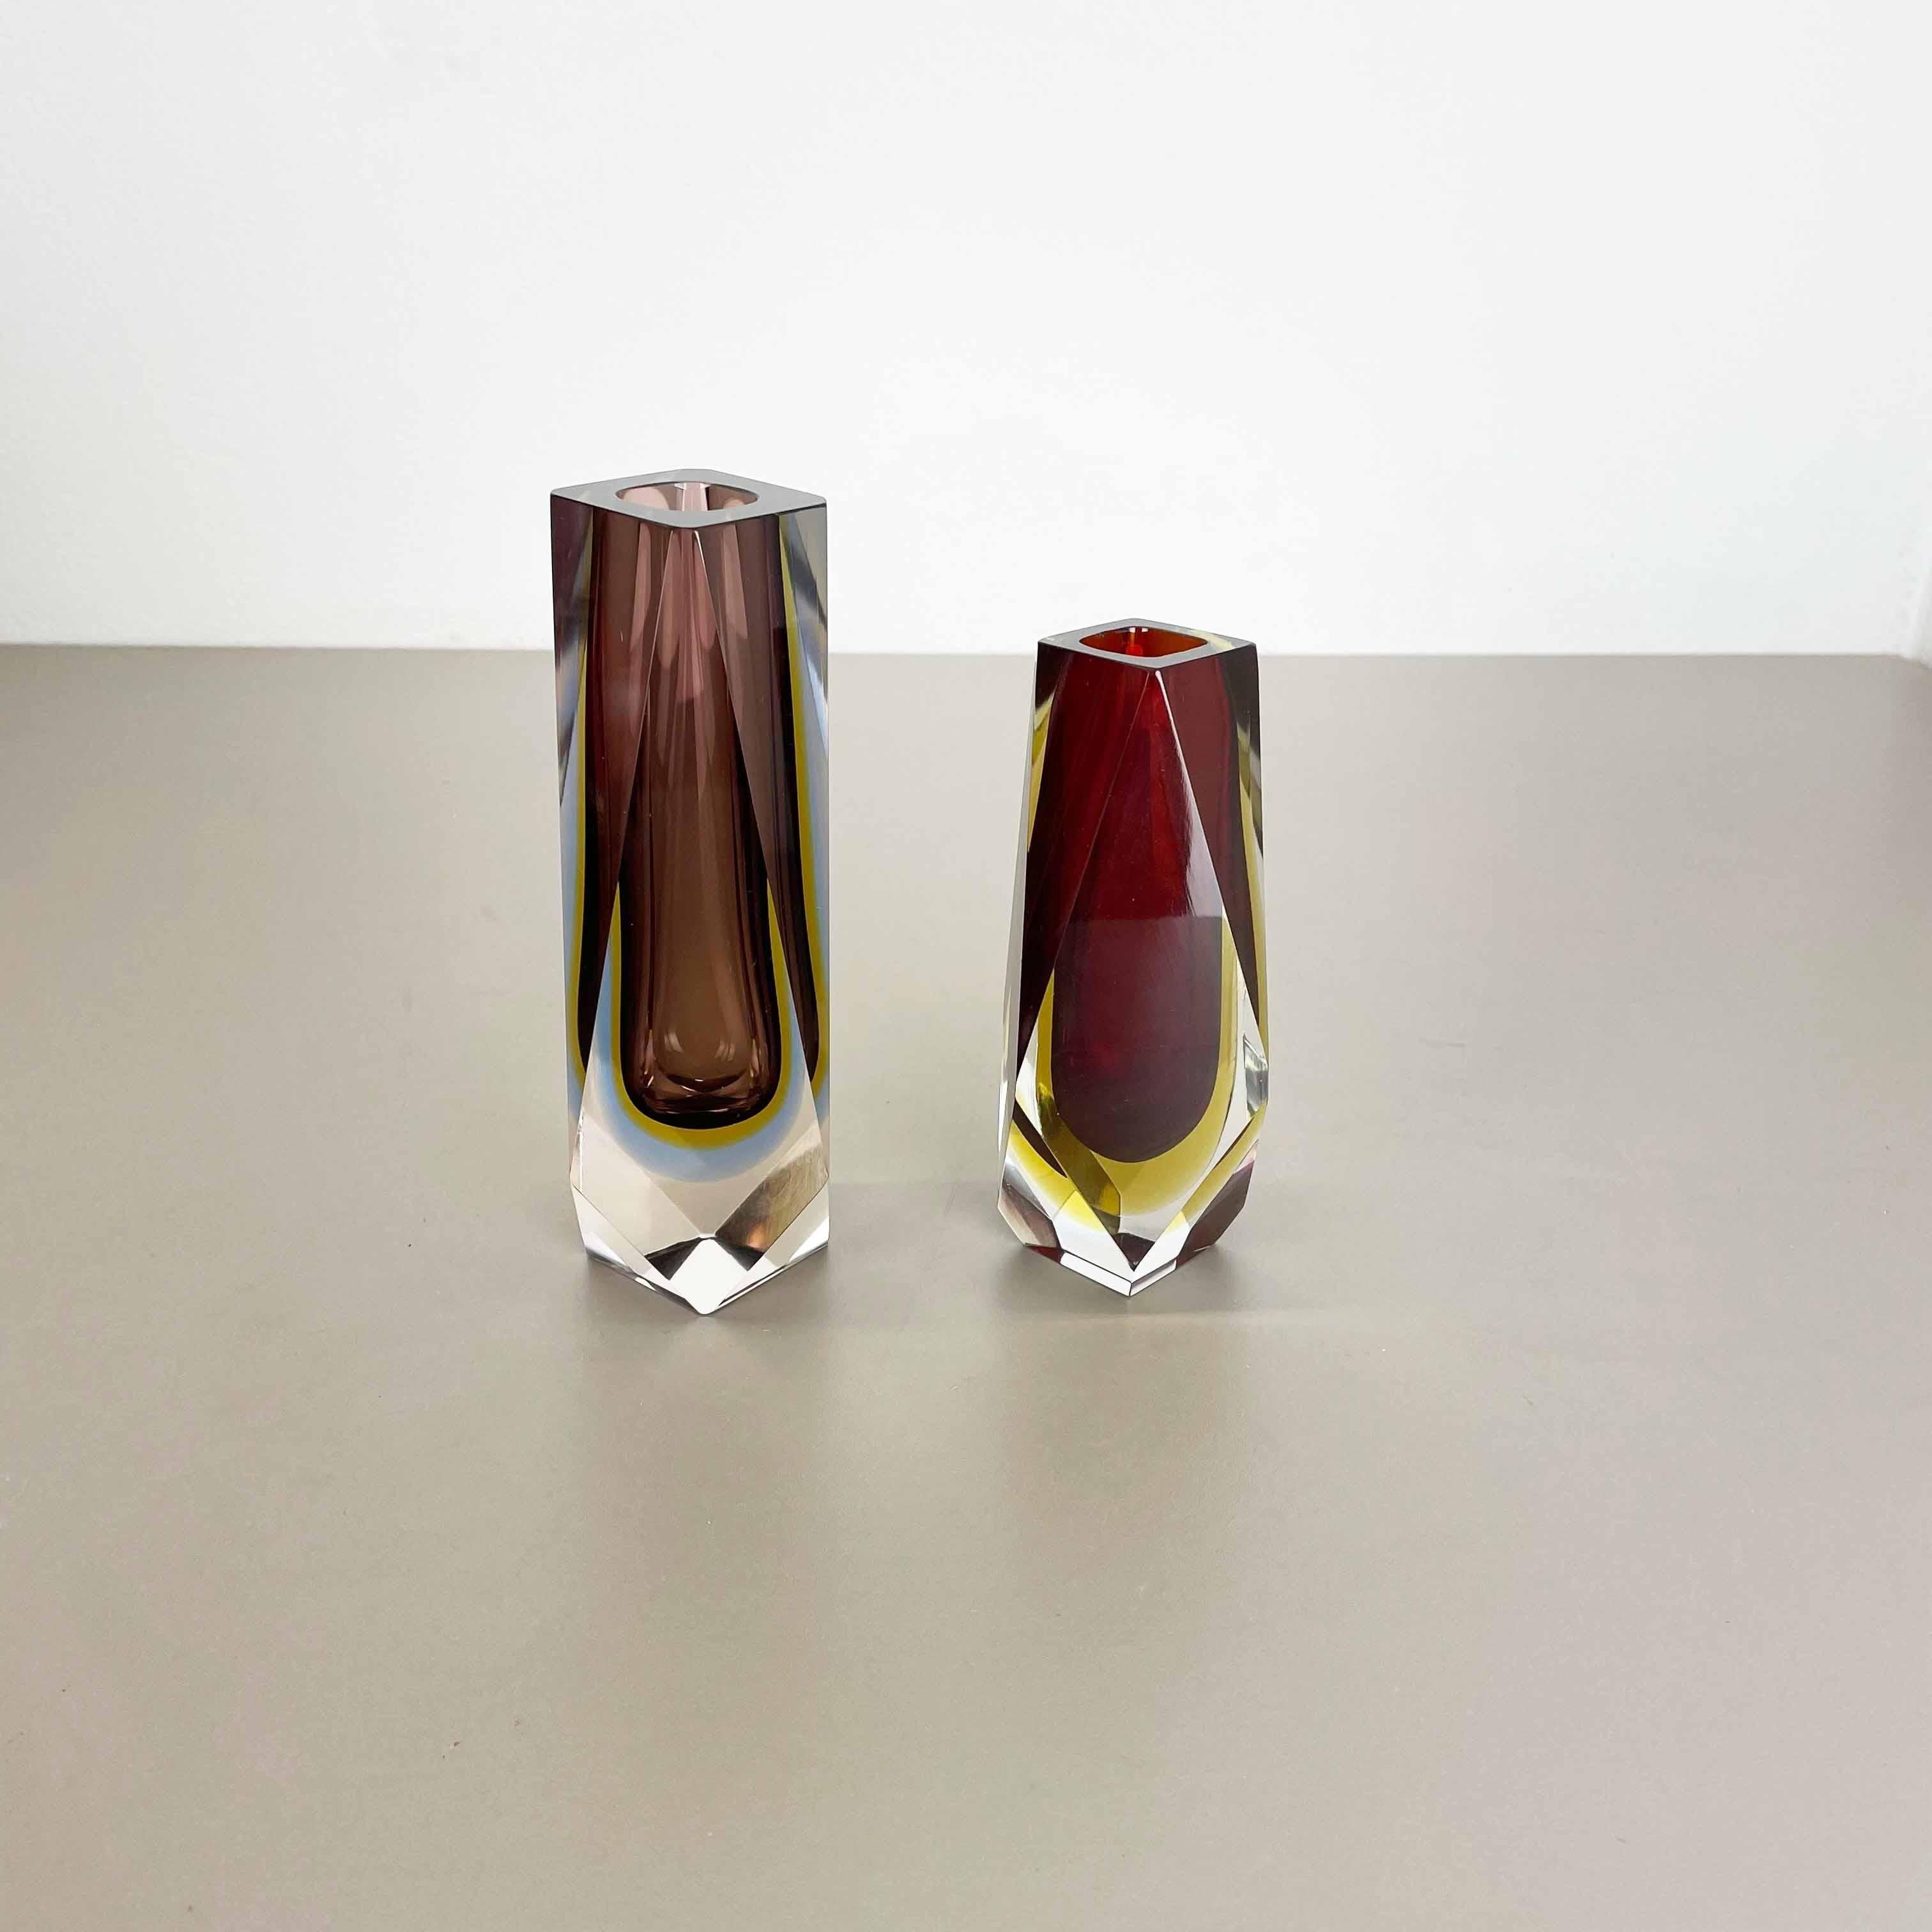 Article :

Ensemble de 2 vases en verre de Murano


Origine :

Murano, Italie


Design :

Flavio Poli


Décennie :

1970s



Cet ensemble original de vases en verre vintage a été conçu par Flavio Poli et produit dans les années 1970 à Murano, en